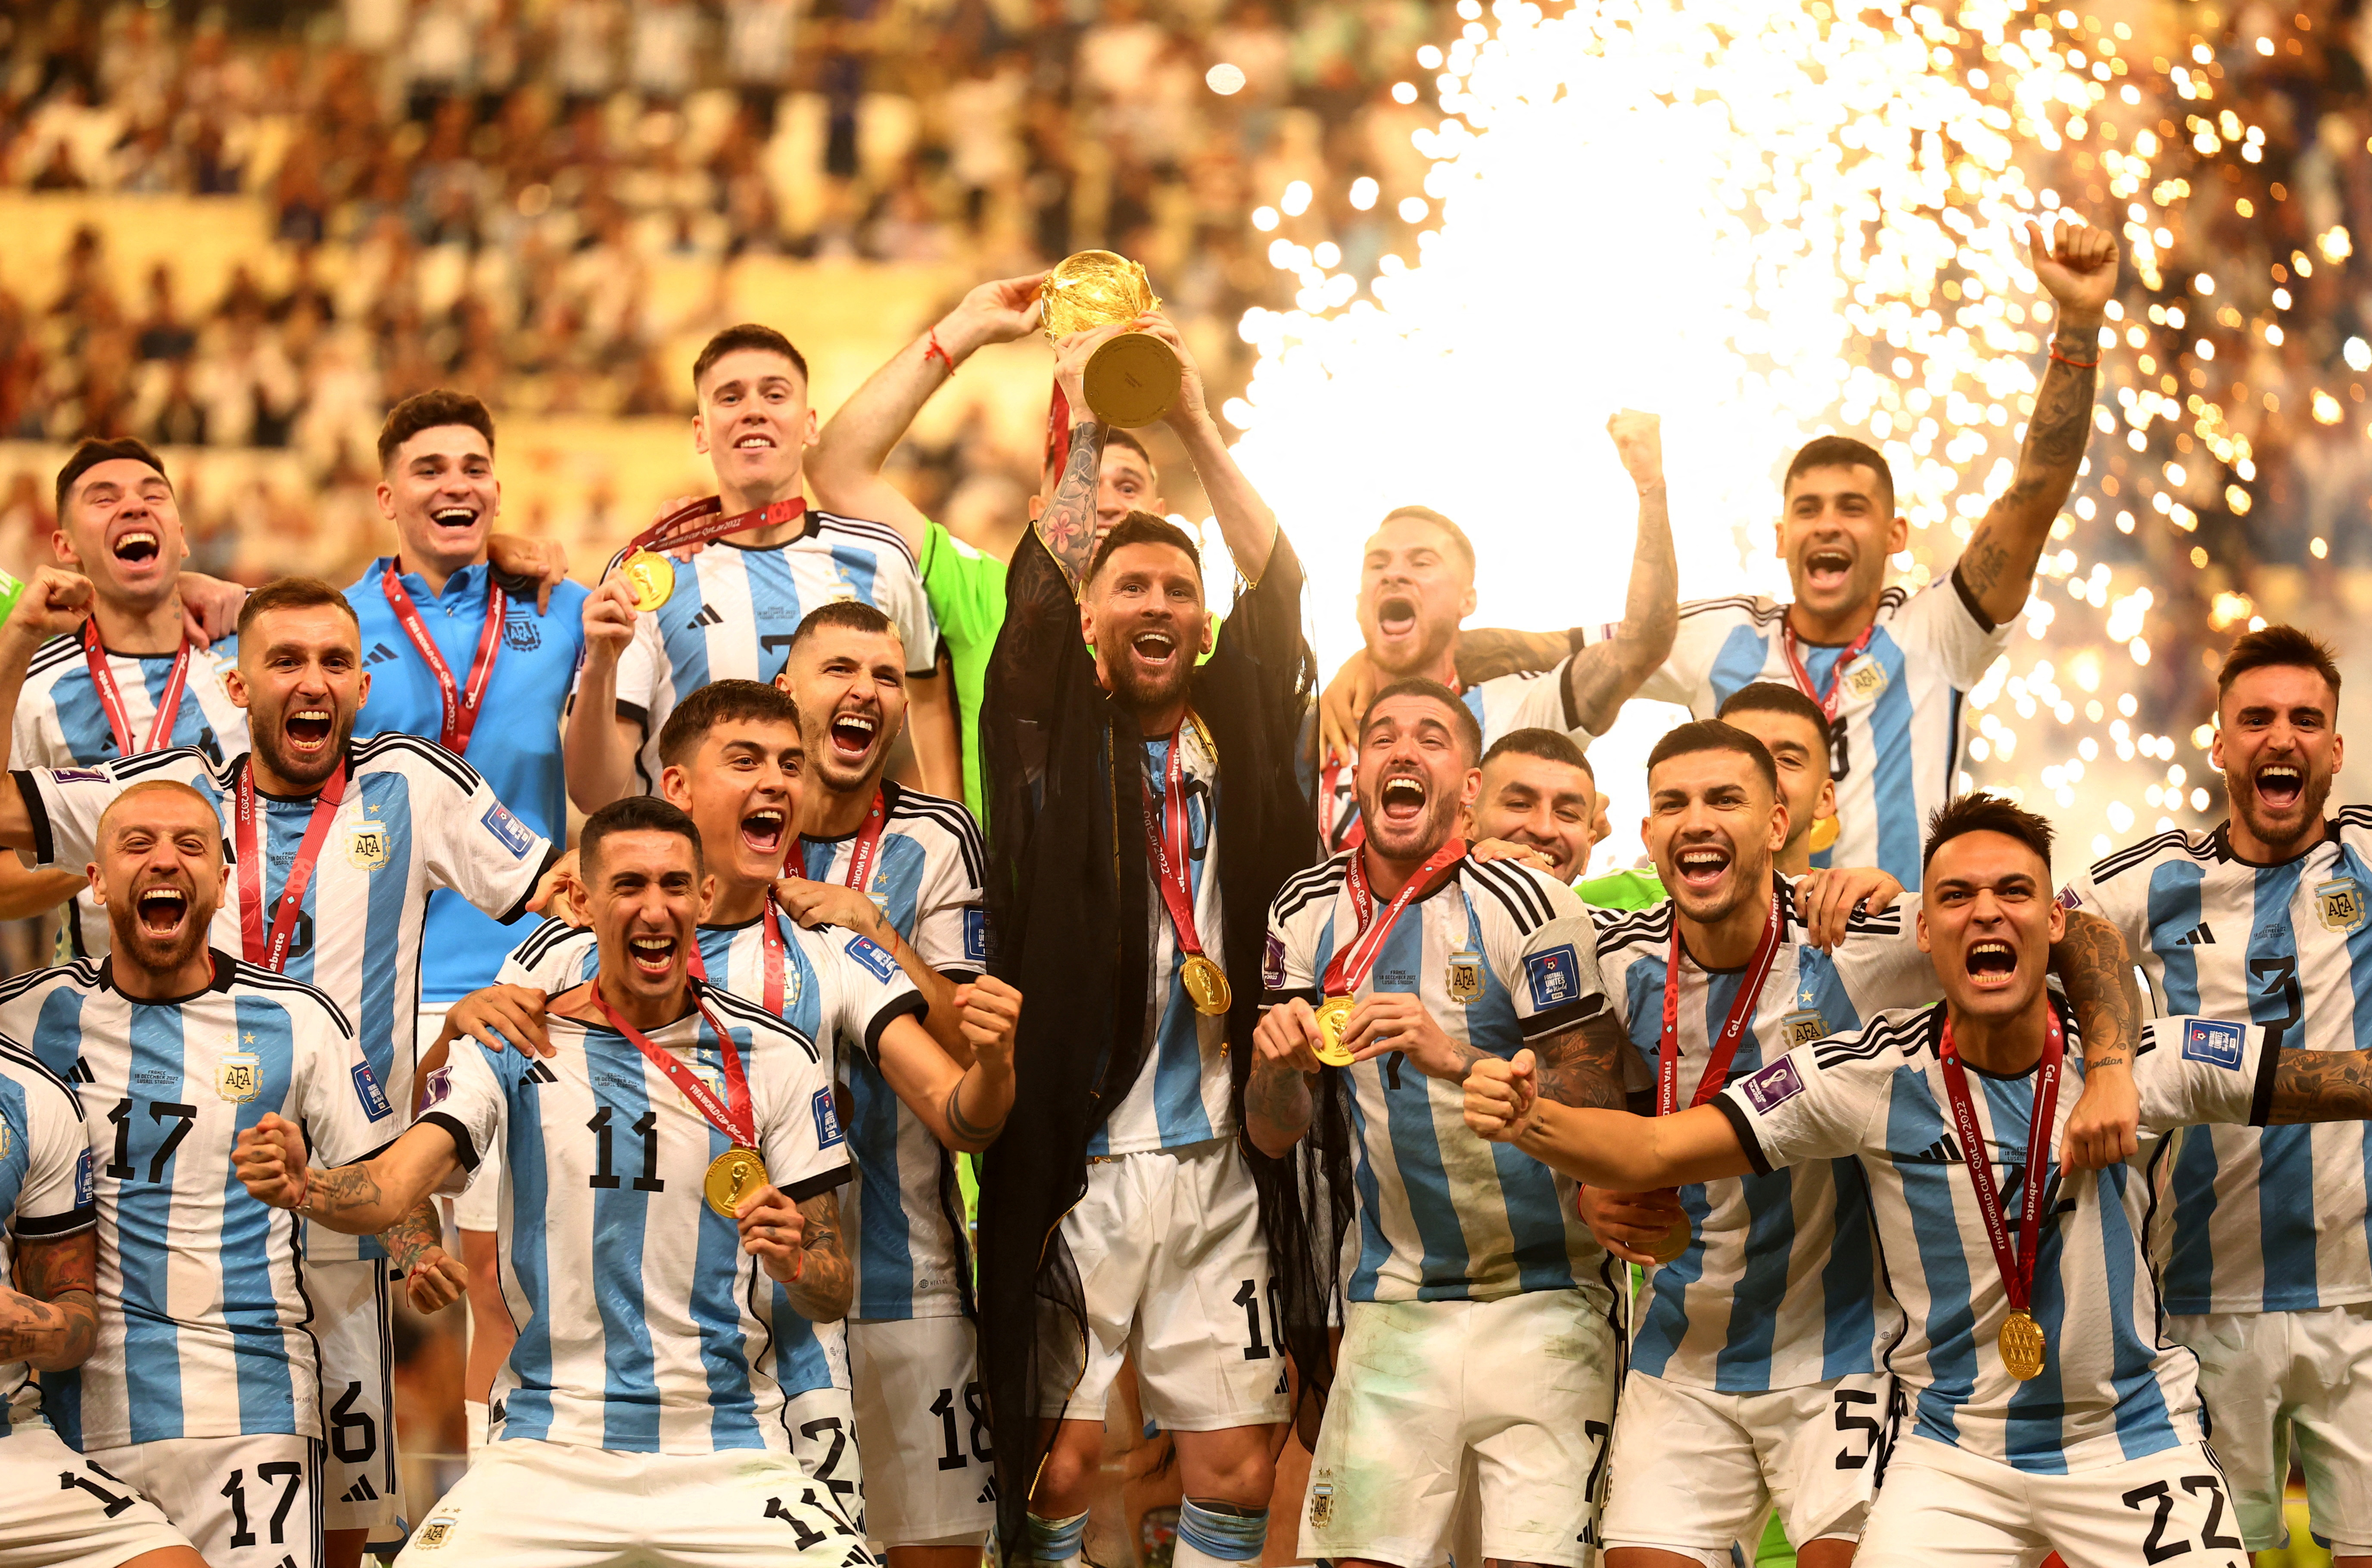 El equipo completo de la Selección argentina, campeona en Qatar 2022 (REUTERS/Kai Pfaffenbach )